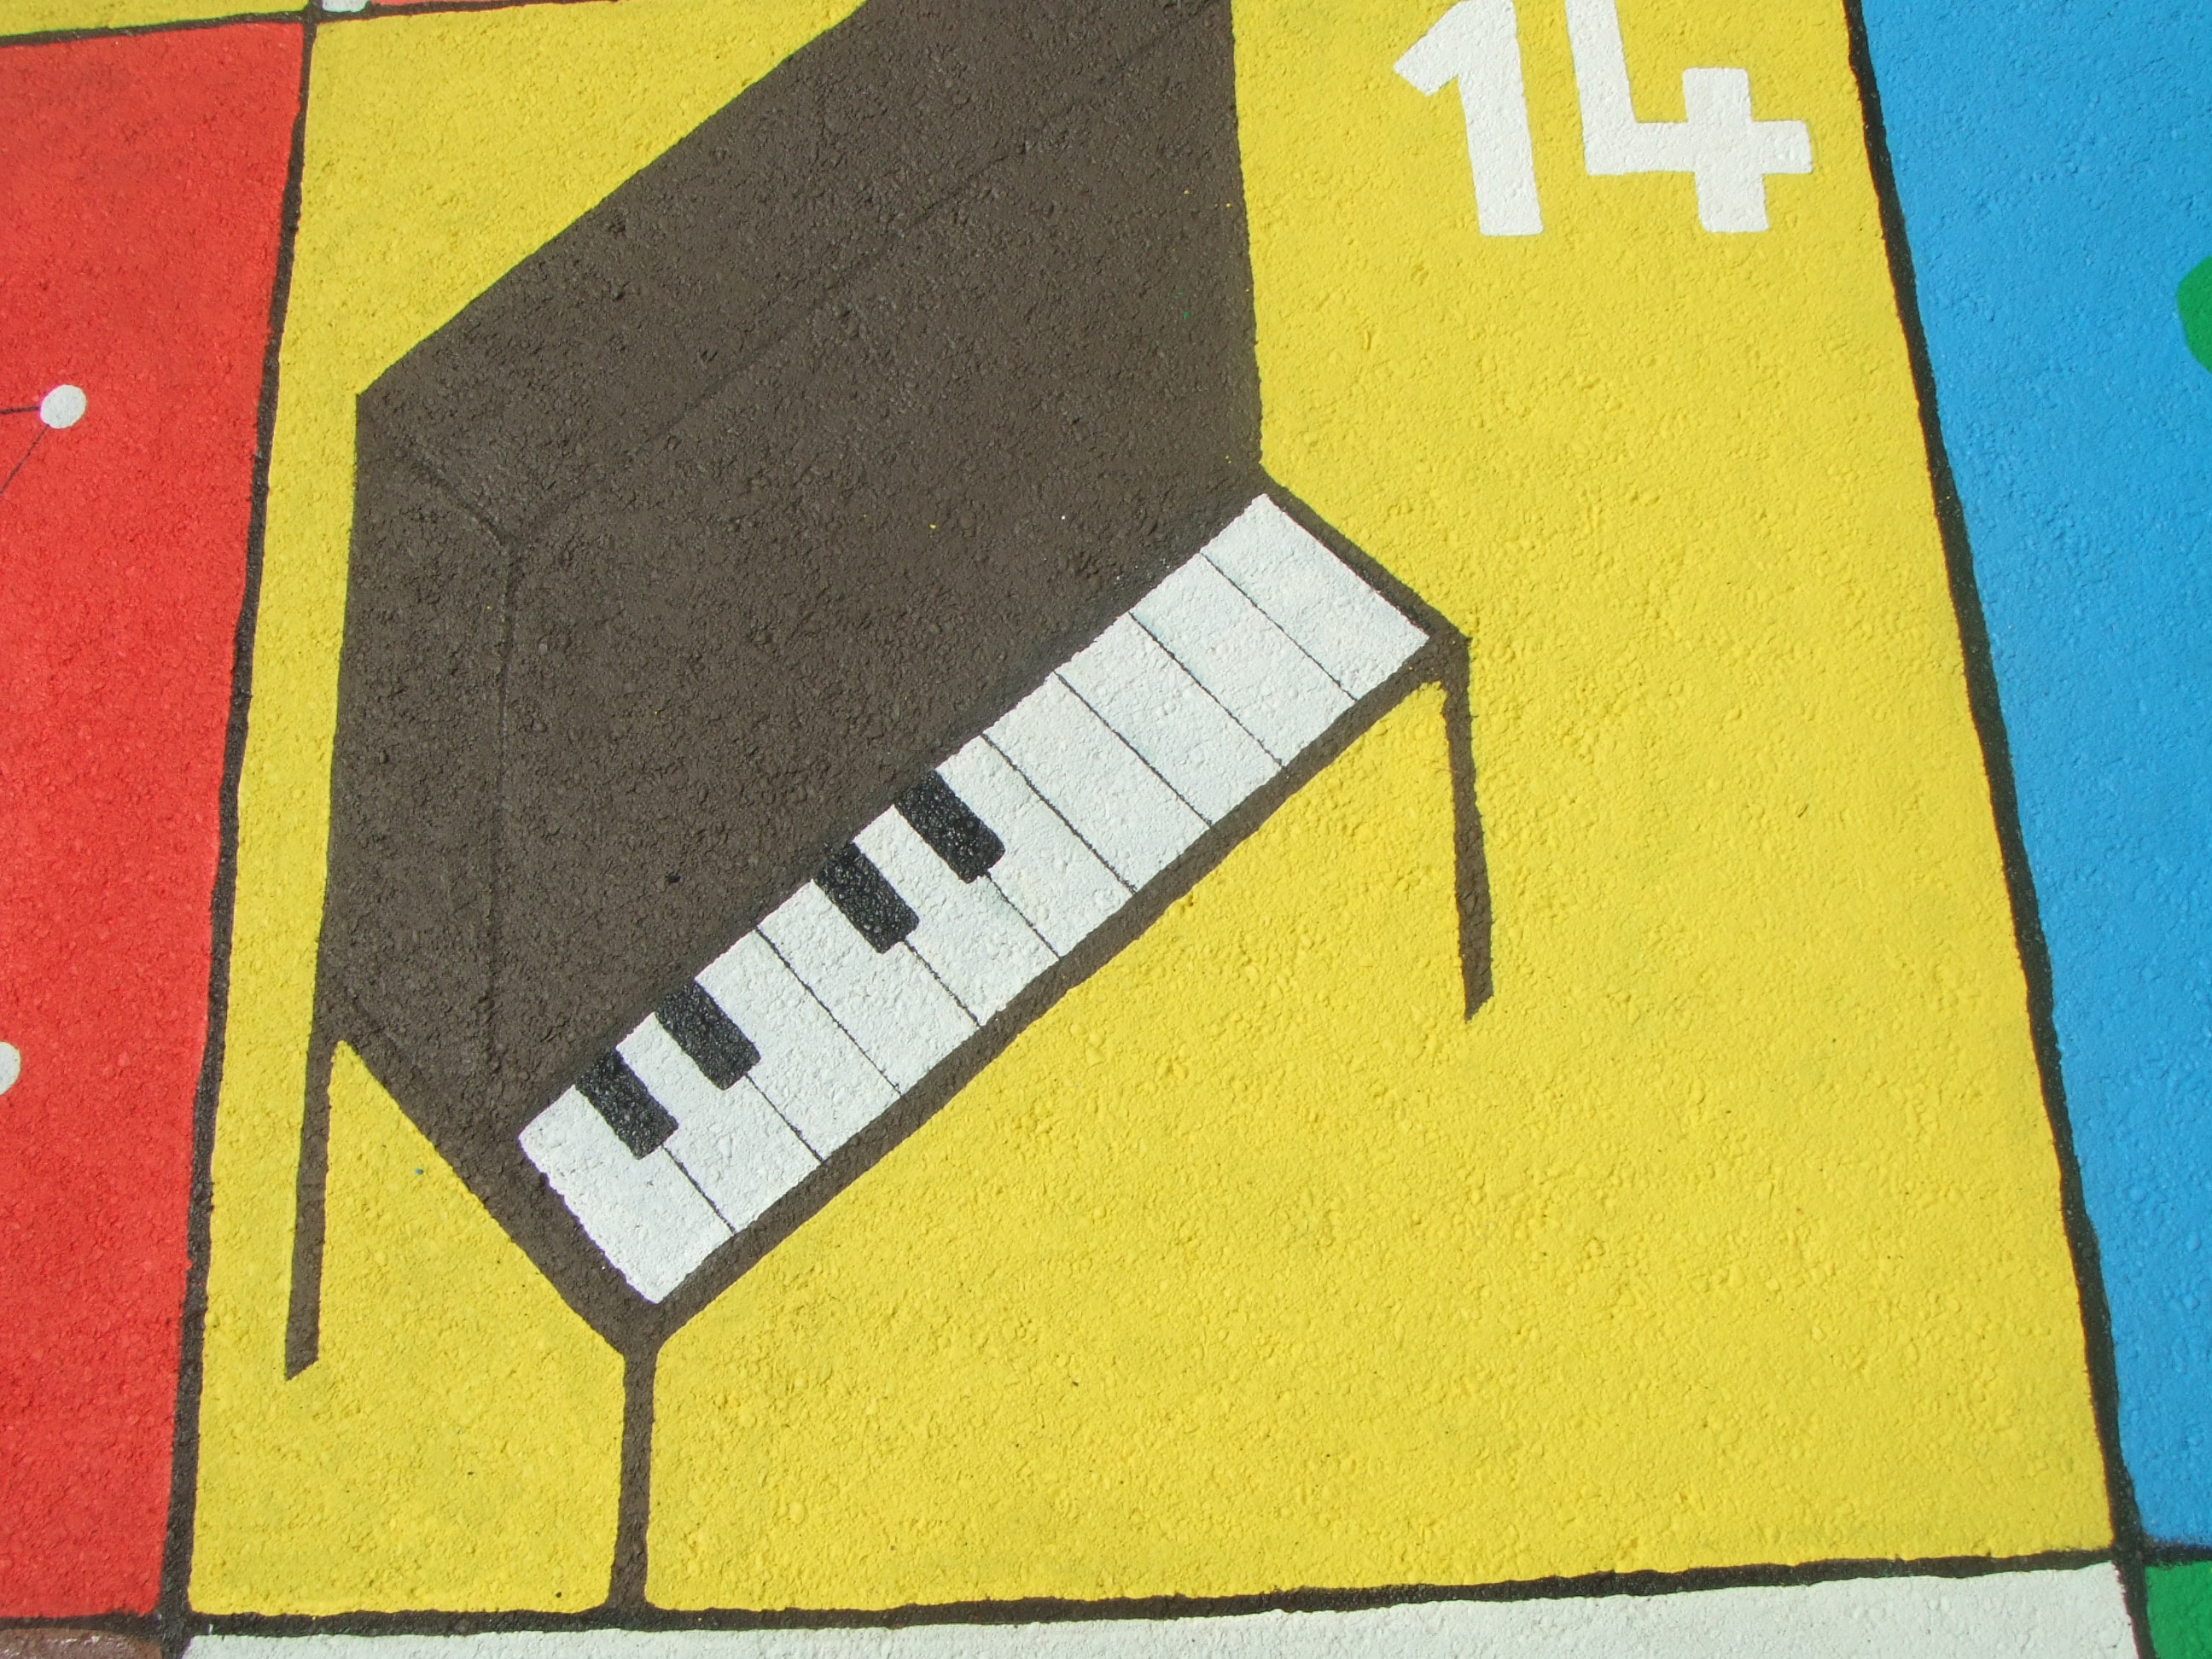 14. THE PIANO